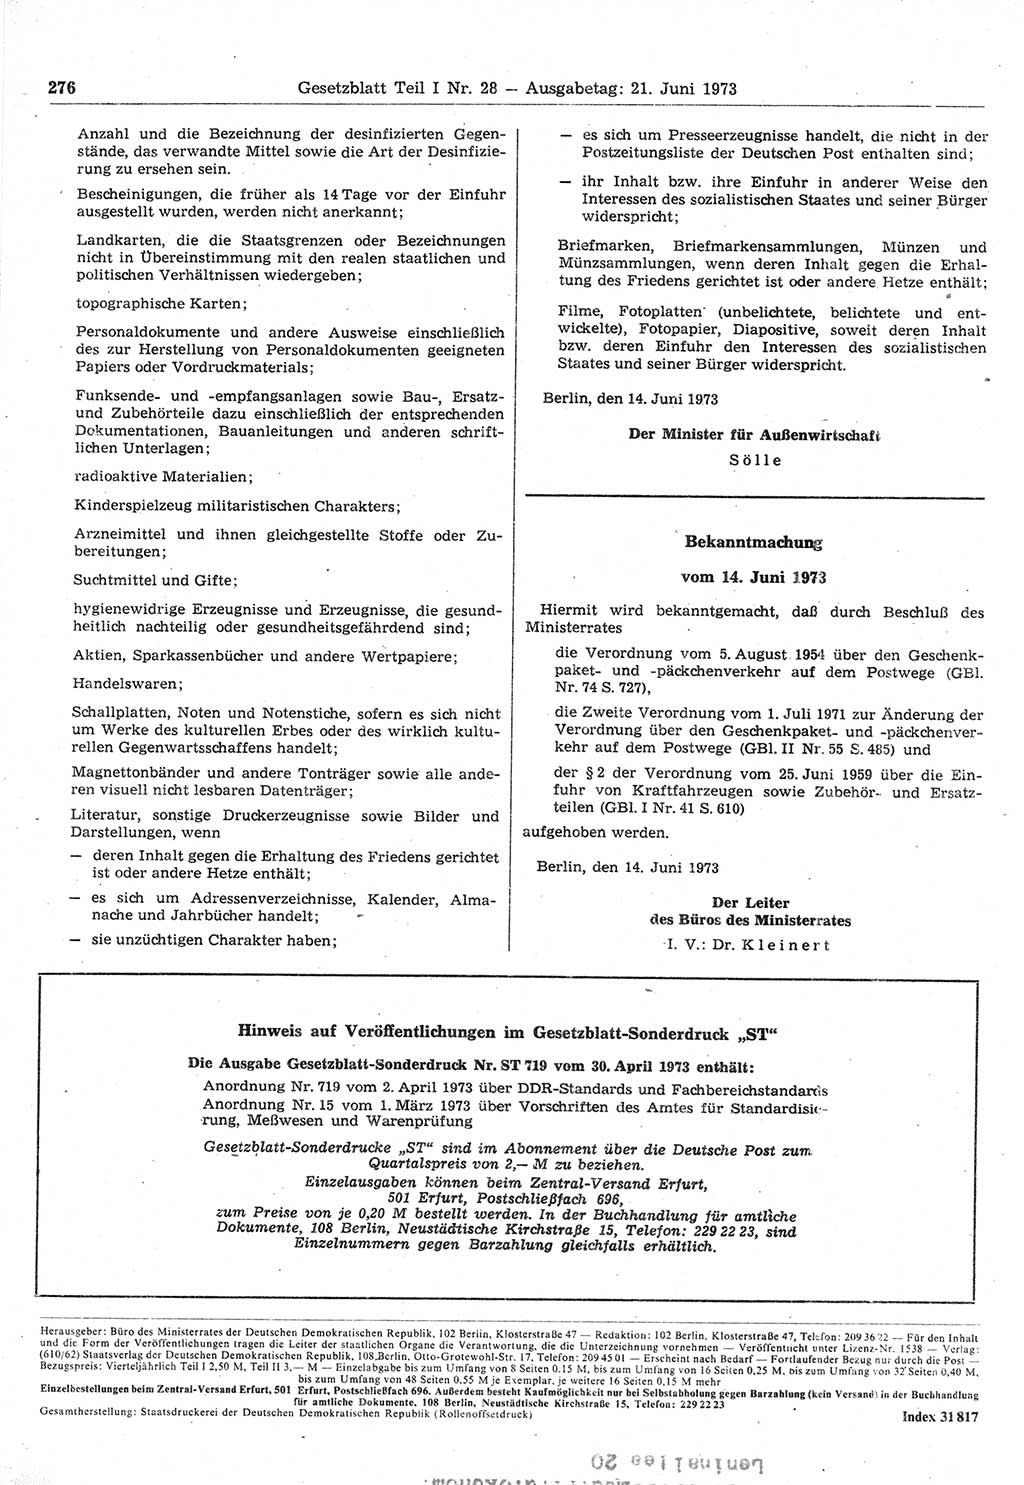 Gesetzblatt (GBl.) der Deutschen Demokratischen Republik (DDR) Teil Ⅰ 1973, Seite 276 (GBl. DDR Ⅰ 1973, S. 276)